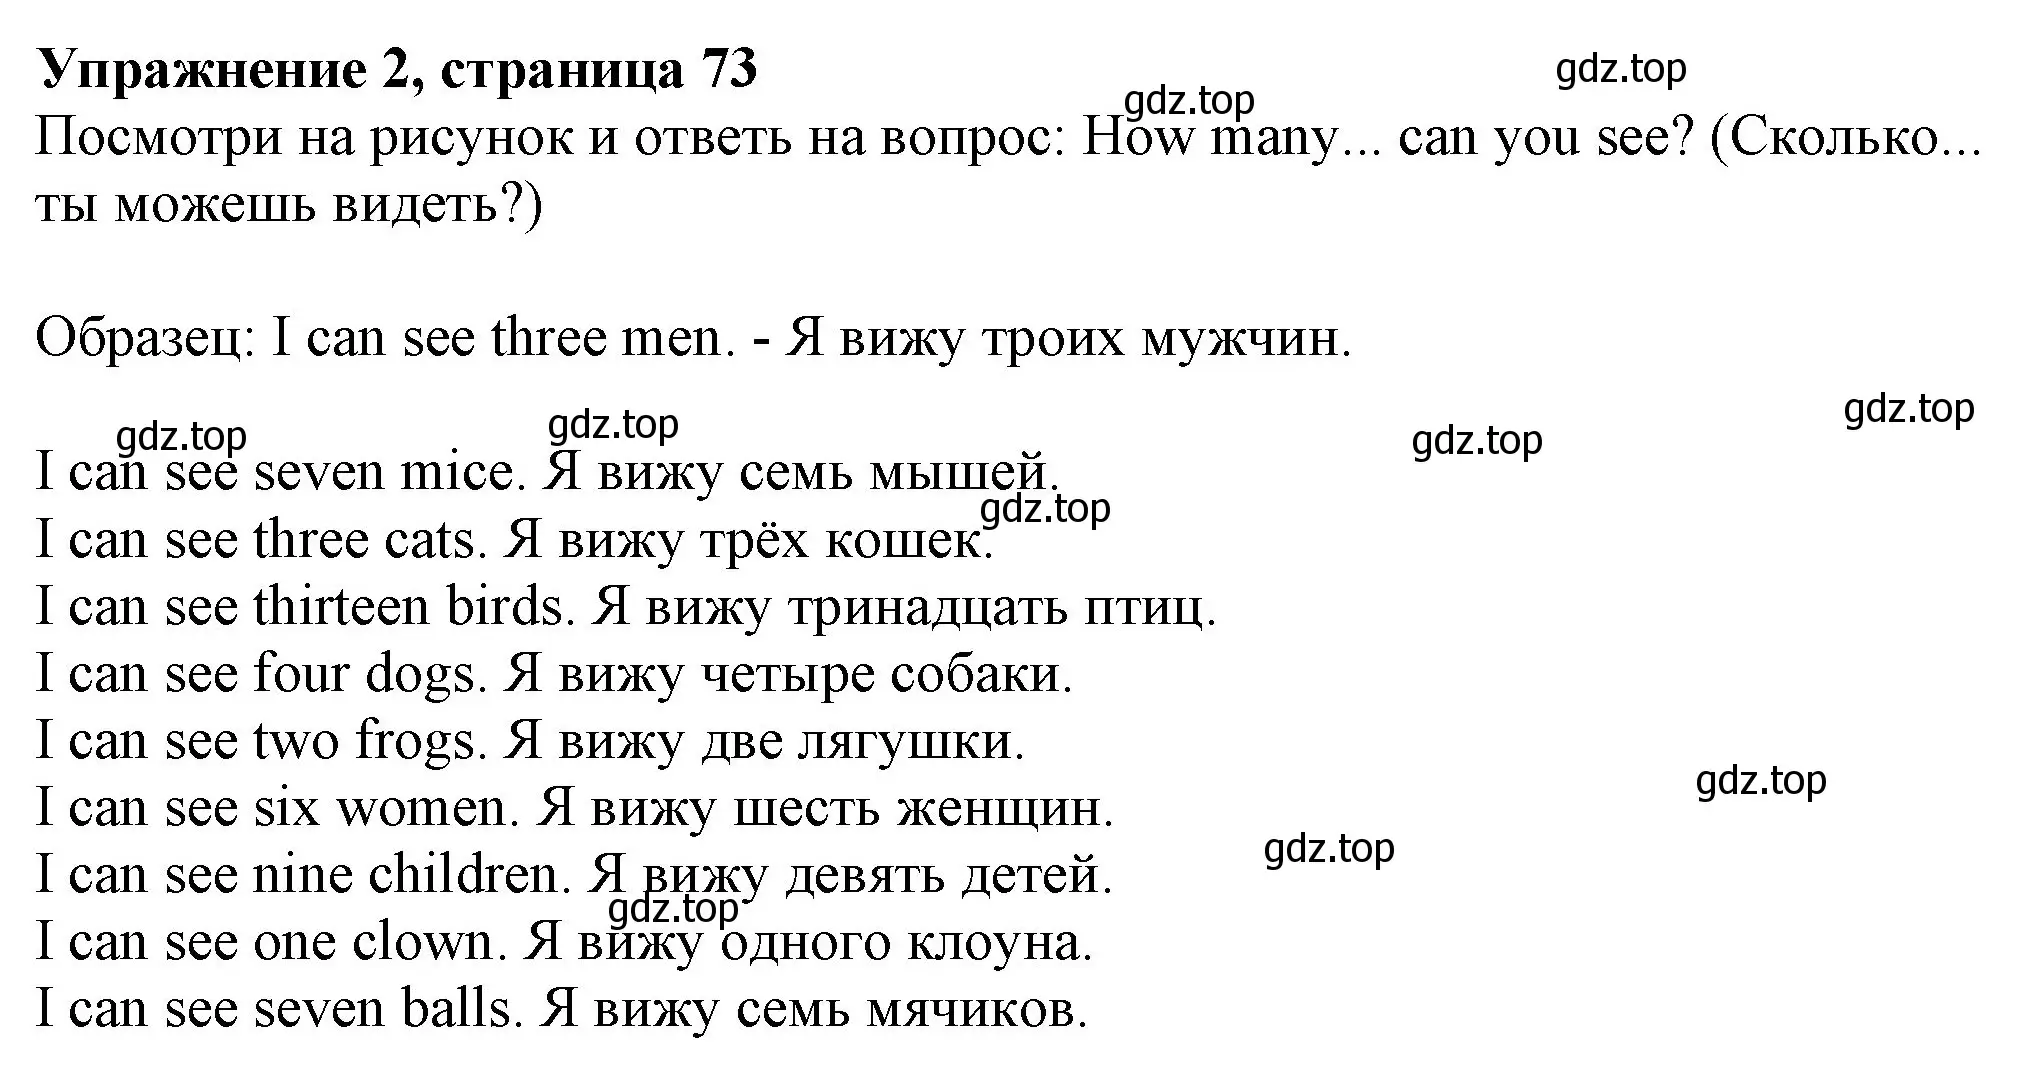 Решение номер 2 (страница 73) гдз по английскому языку 3 класс Биболетова, Денисенко, рабочая тетрадь